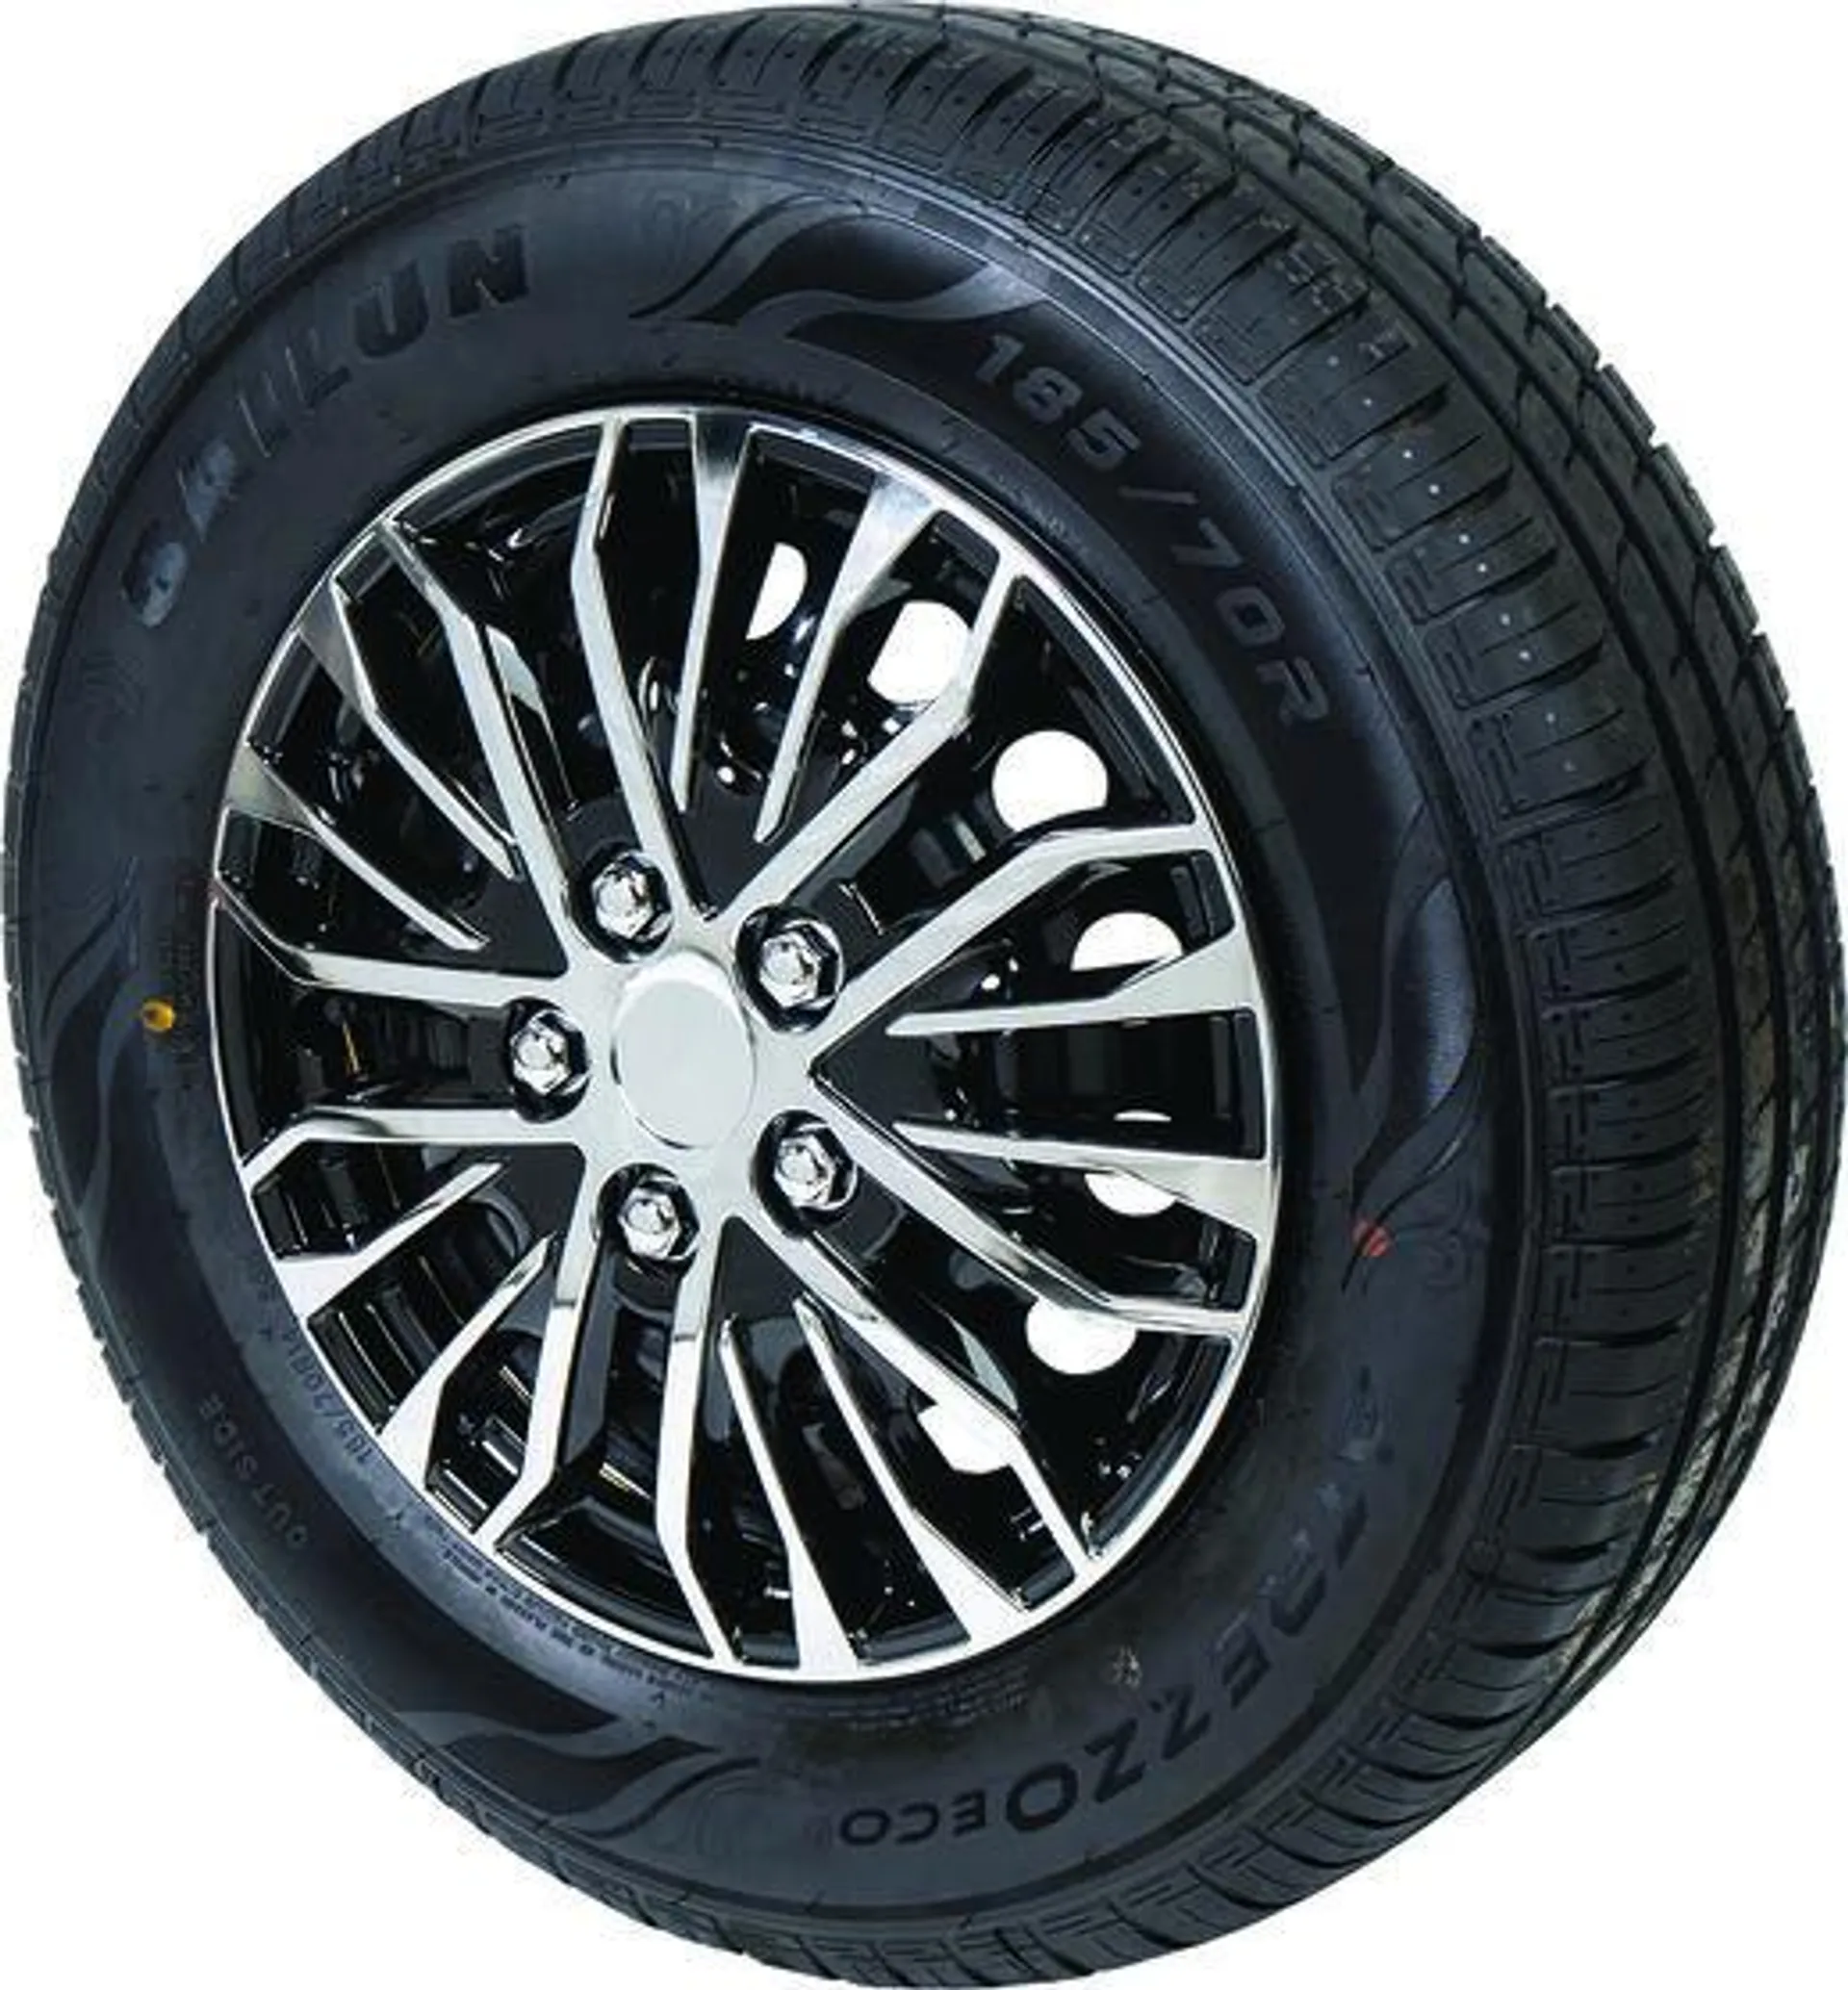 SCA Premium Wheel Covers - Plasma 16"